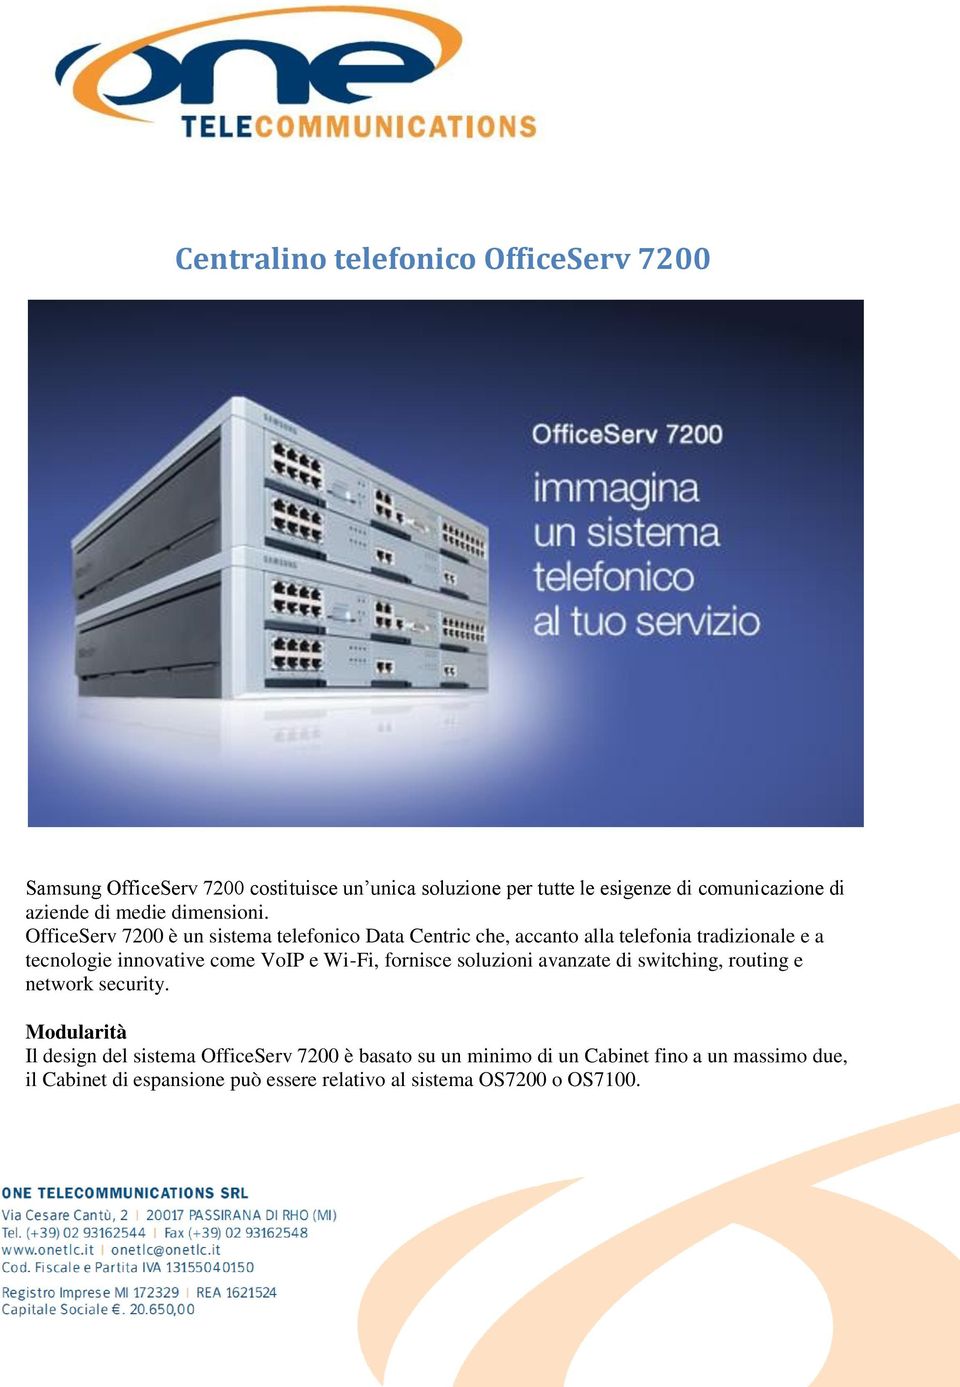 OfficeServ 7200 è un sistema telefonico Data Centric che, accanto alla telefonia tradizionale e a tecnologie innovative come VoIP e Wi-Fi,